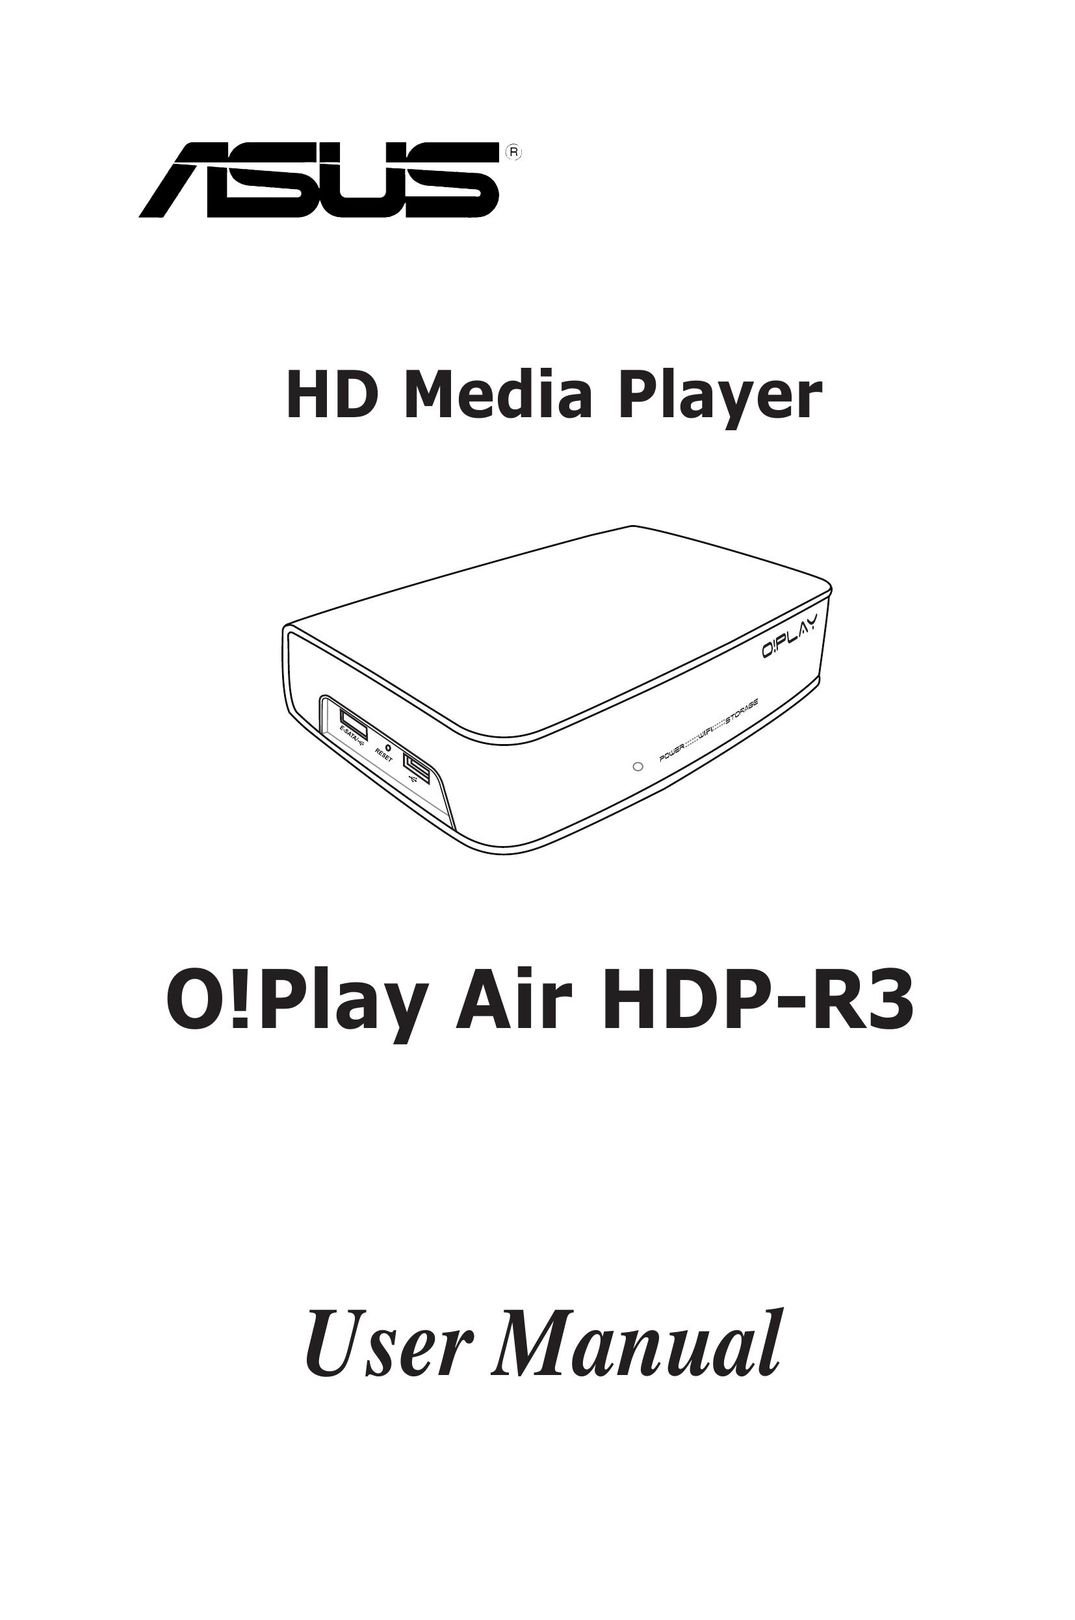 Asus HDP-R3 Modem User Manual